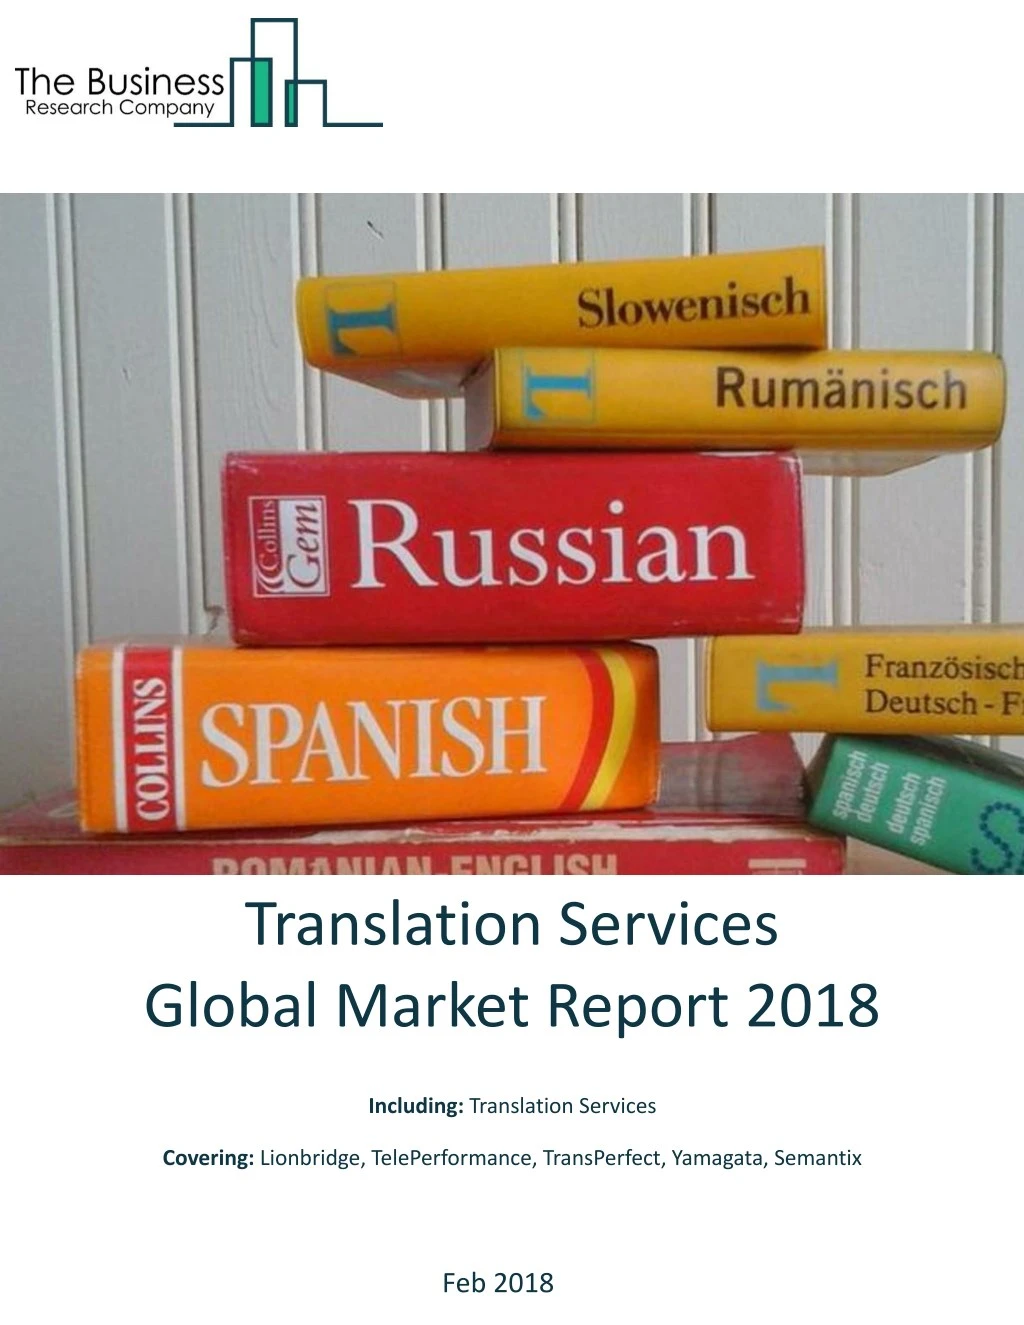 translation services global market report 2018